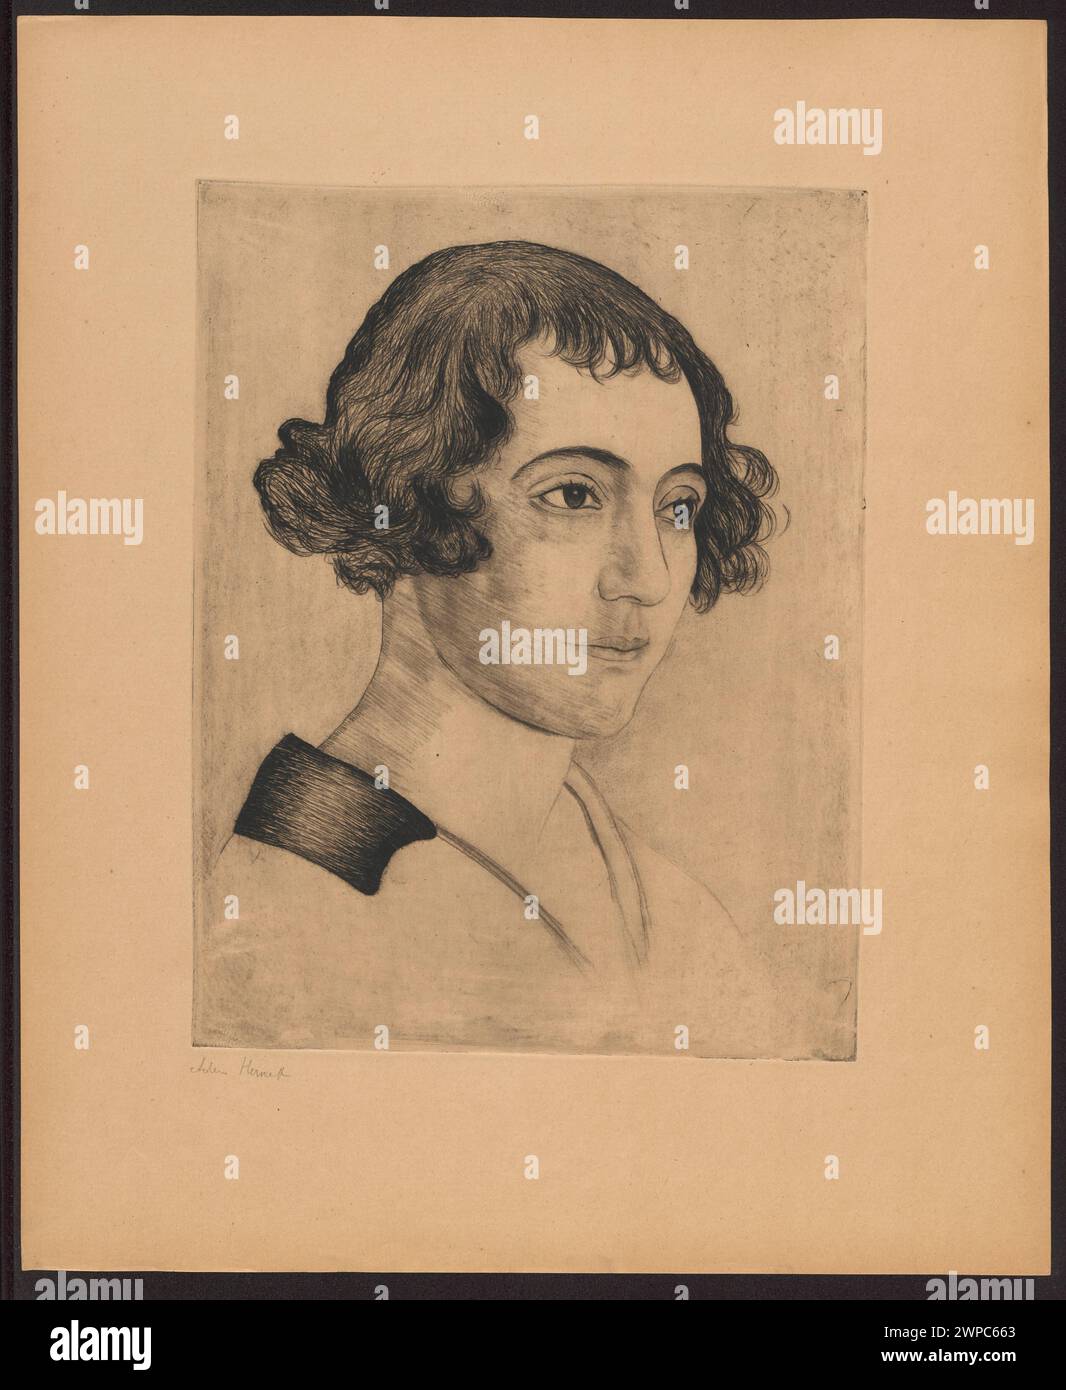 Portrait d'une femme dans une extrémité noire ; Herszaft, Adam (1886-1942) ; années 1930 (1930-00-00-1939-00-00) ; Krystall, Bronisław (1887-1983) - collection, collier, document testamentaire Banque D'Images